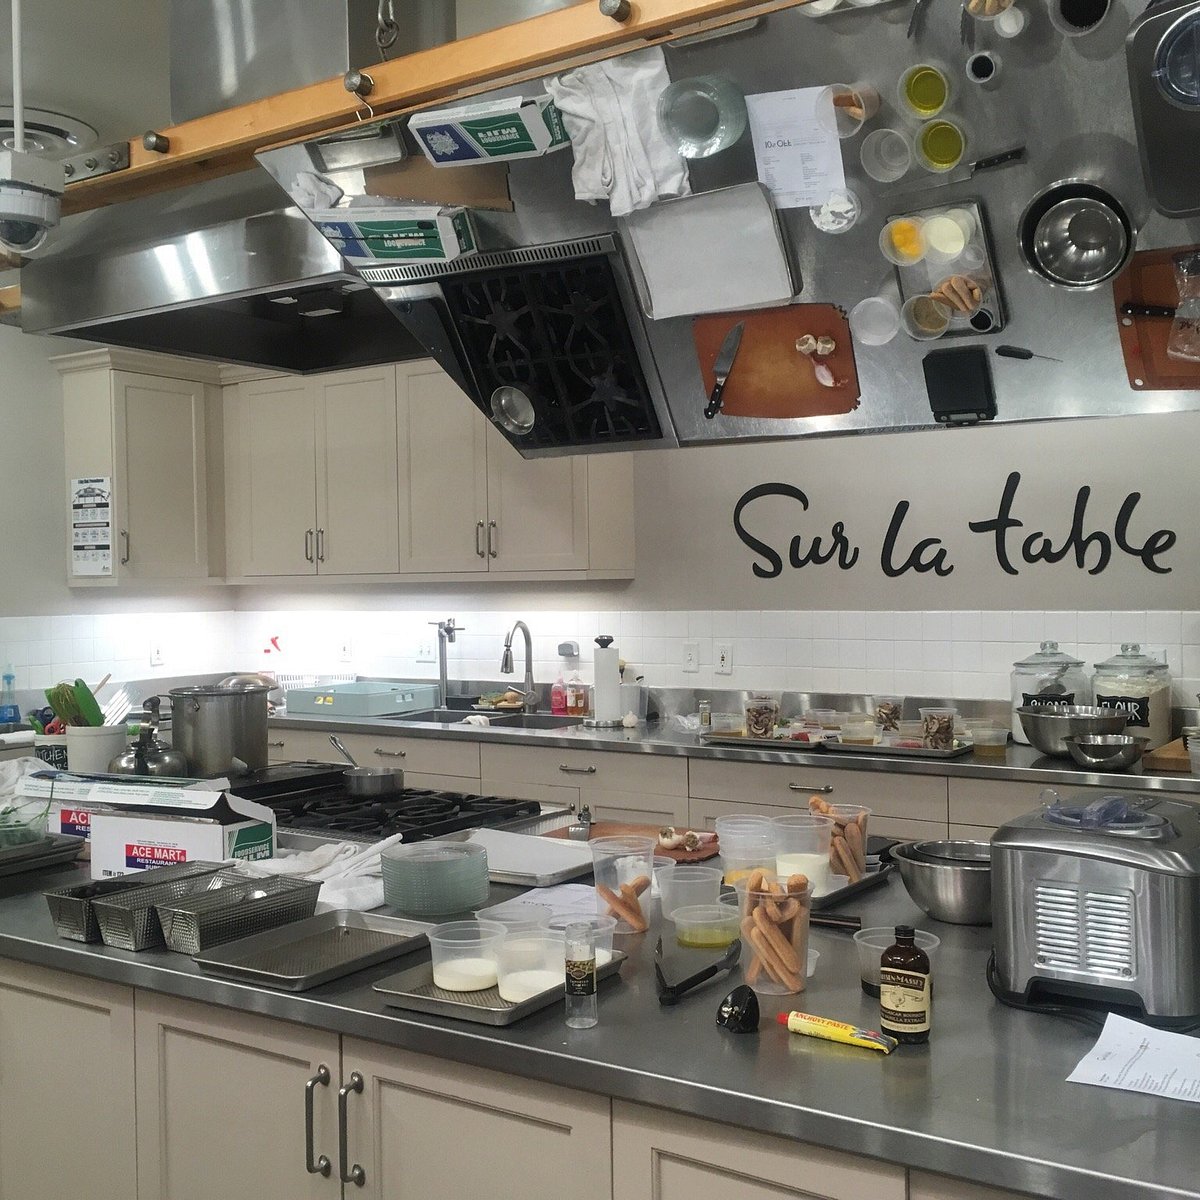 Sur La Table cookware line review - Reviewed